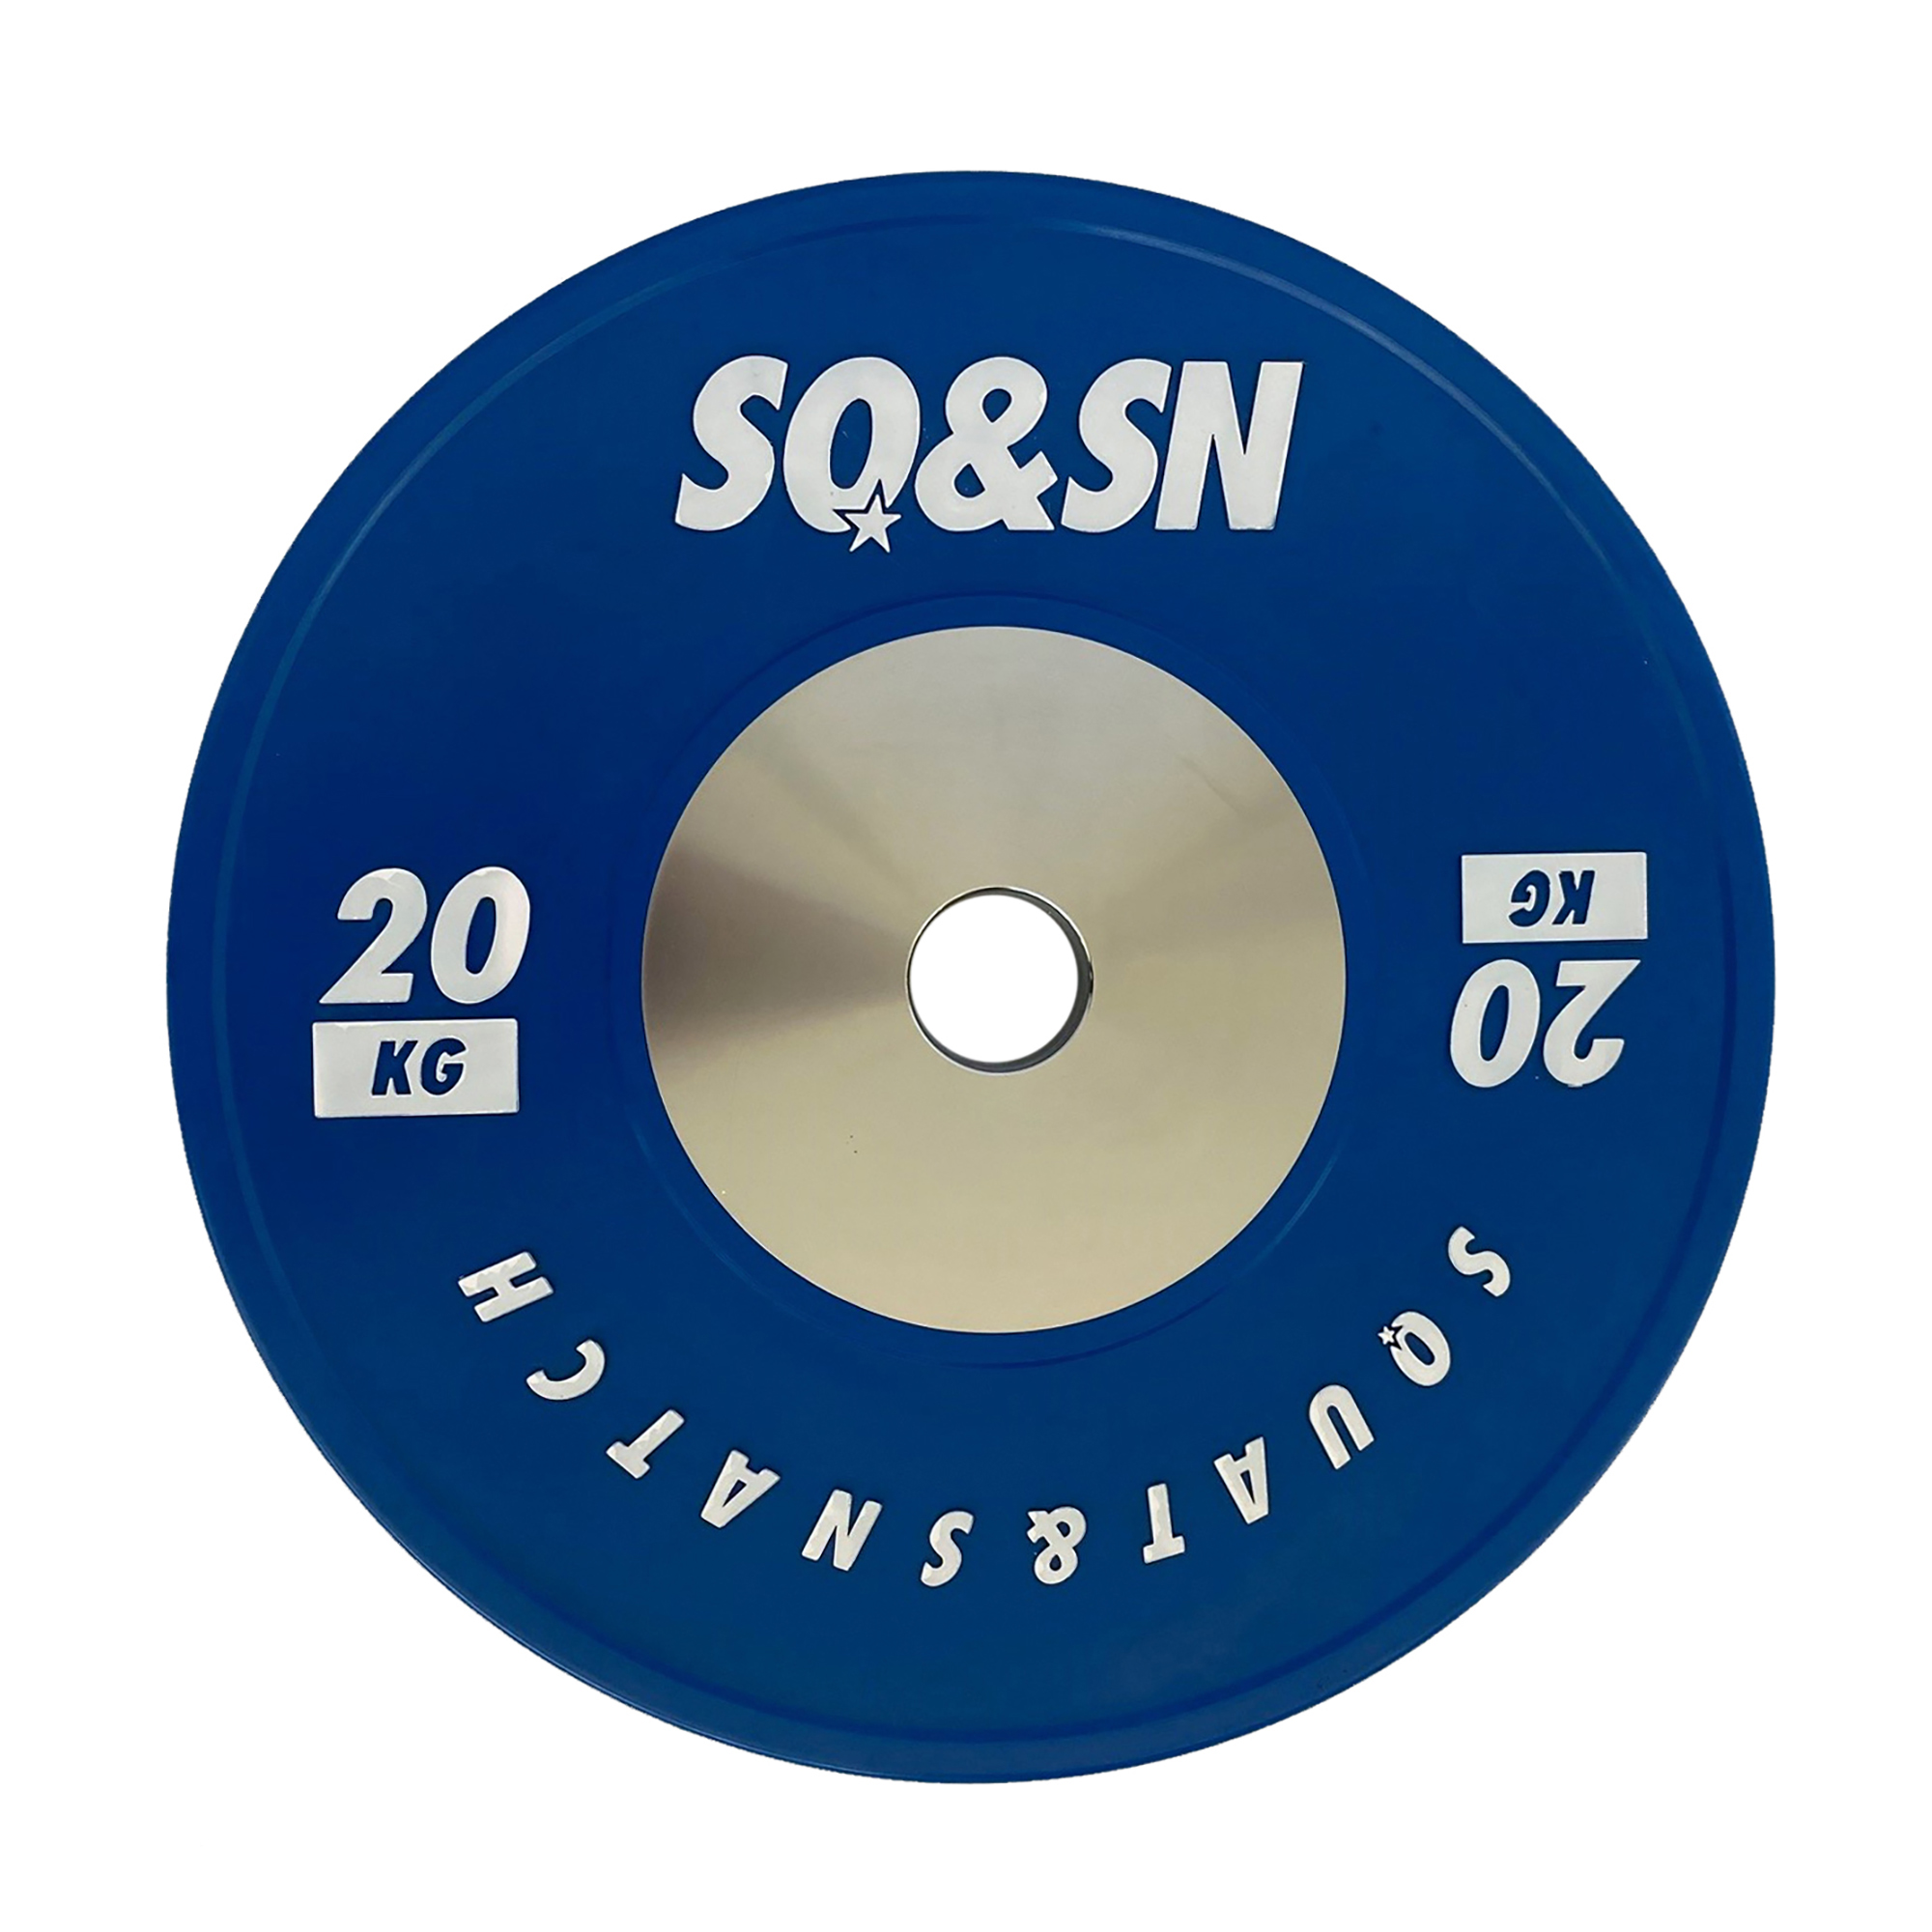 Brug SQ&SN Competition Bumper Plate 20 kg Blue - Demo til en forbedret oplevelse